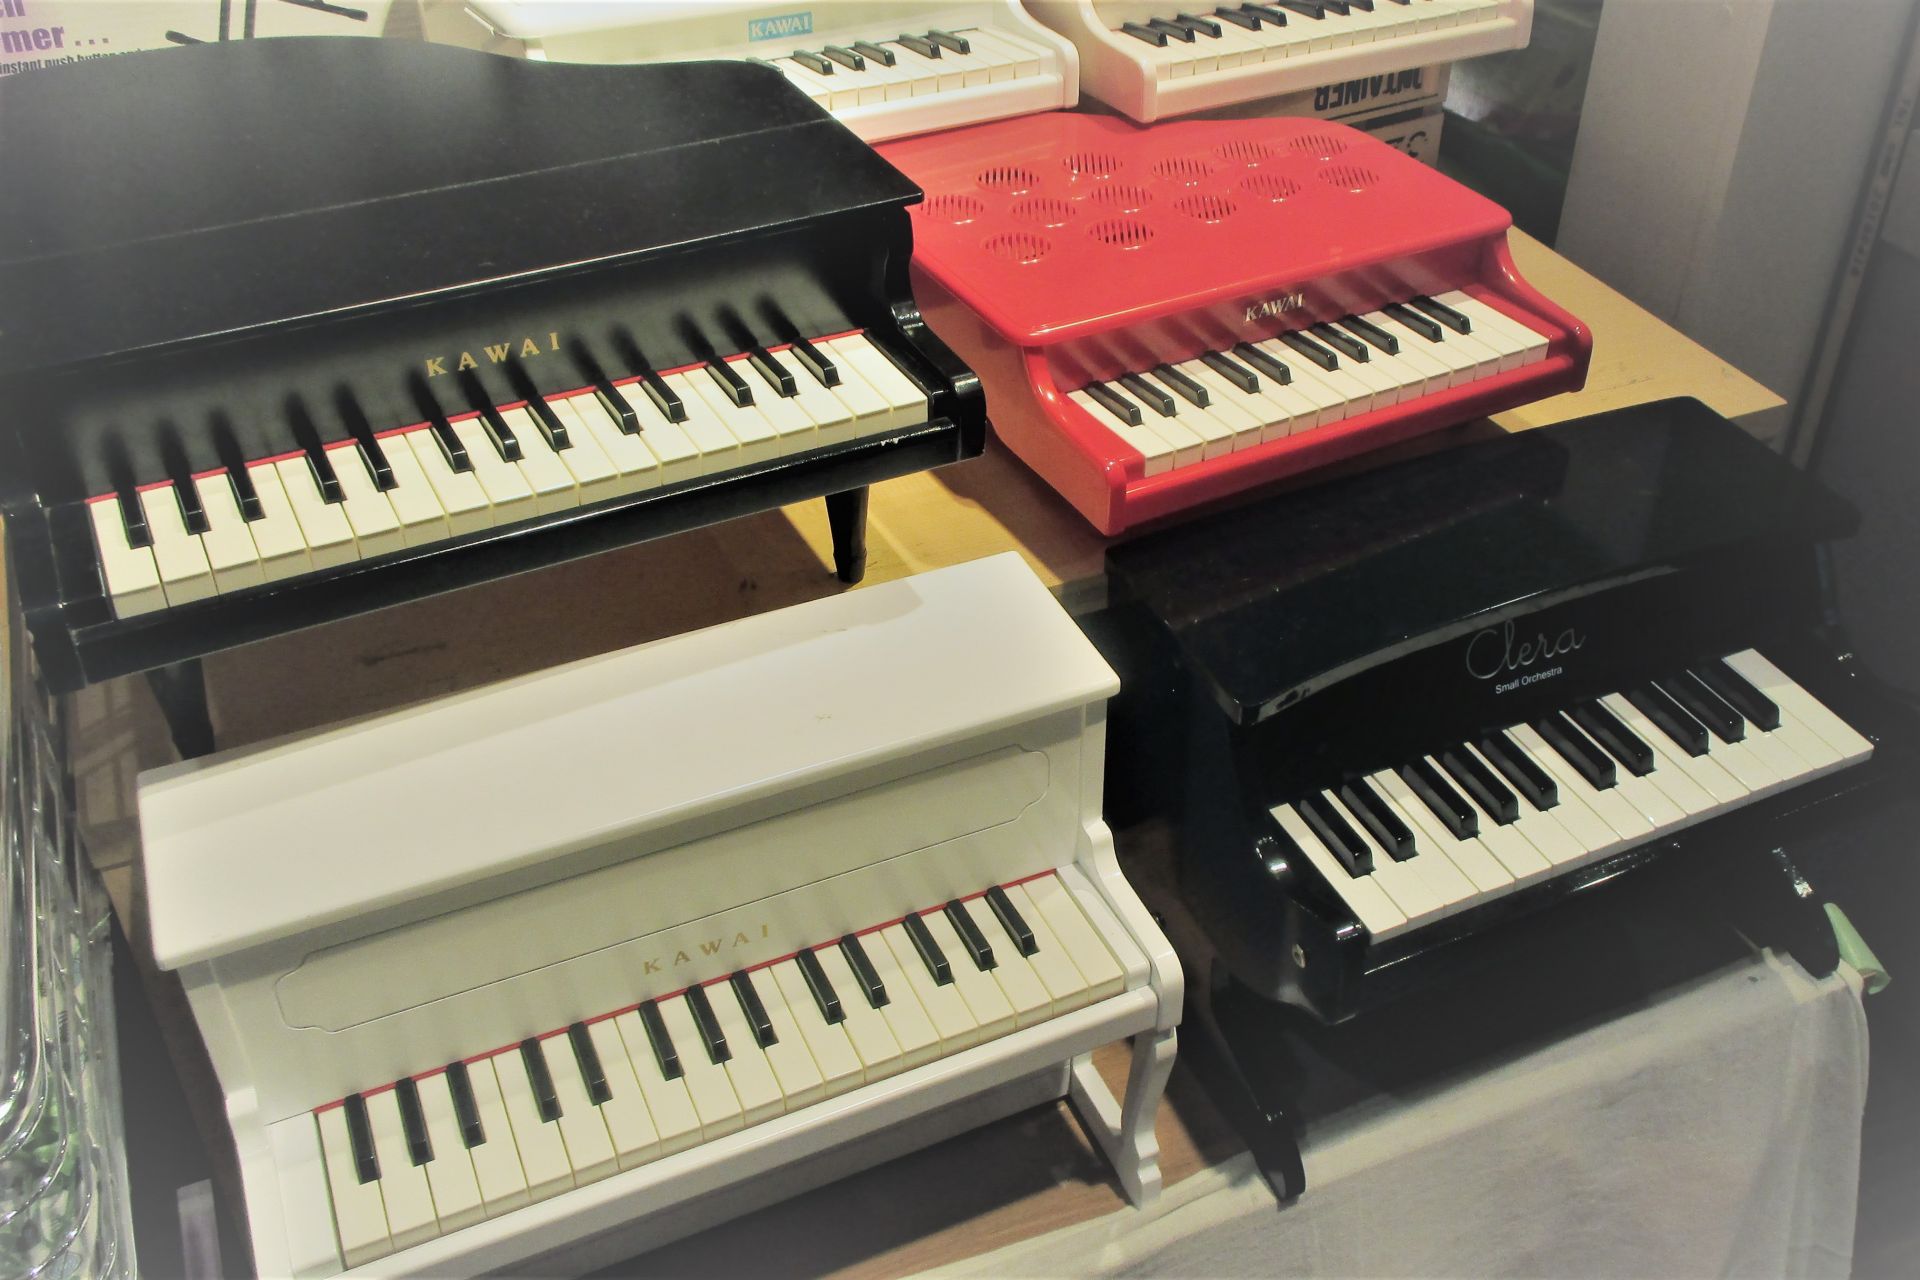 年始のご挨拶のお土産にいかがでしょうか ミニピアノ各種展示中 イオンモール京都桂川店 店舗情報 島村楽器